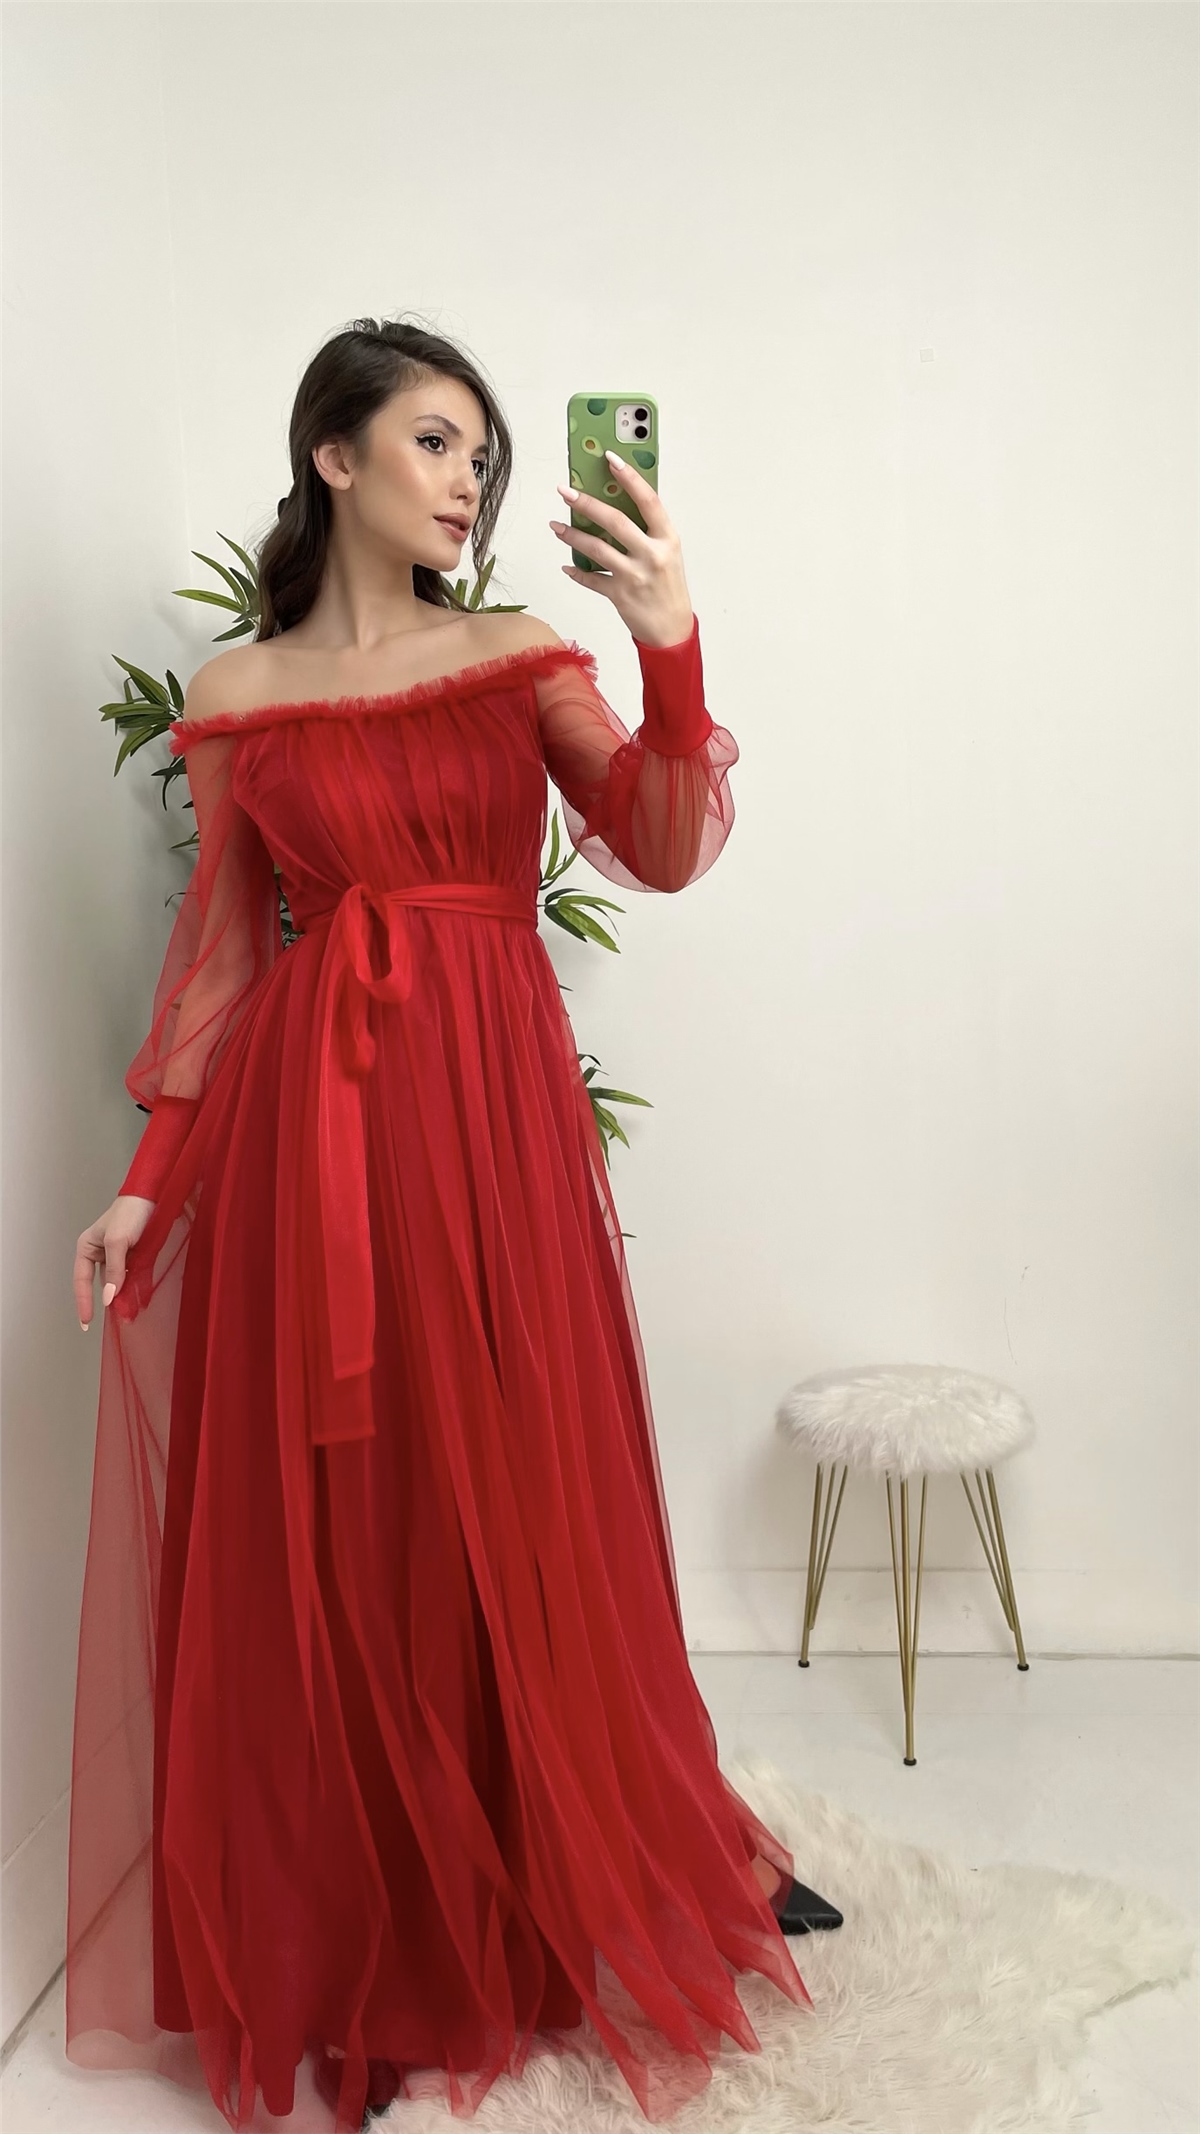 Kırmızı Kuşak Detay Tül Abiye Elbise - Moda Kapımda İle Kapınızda!